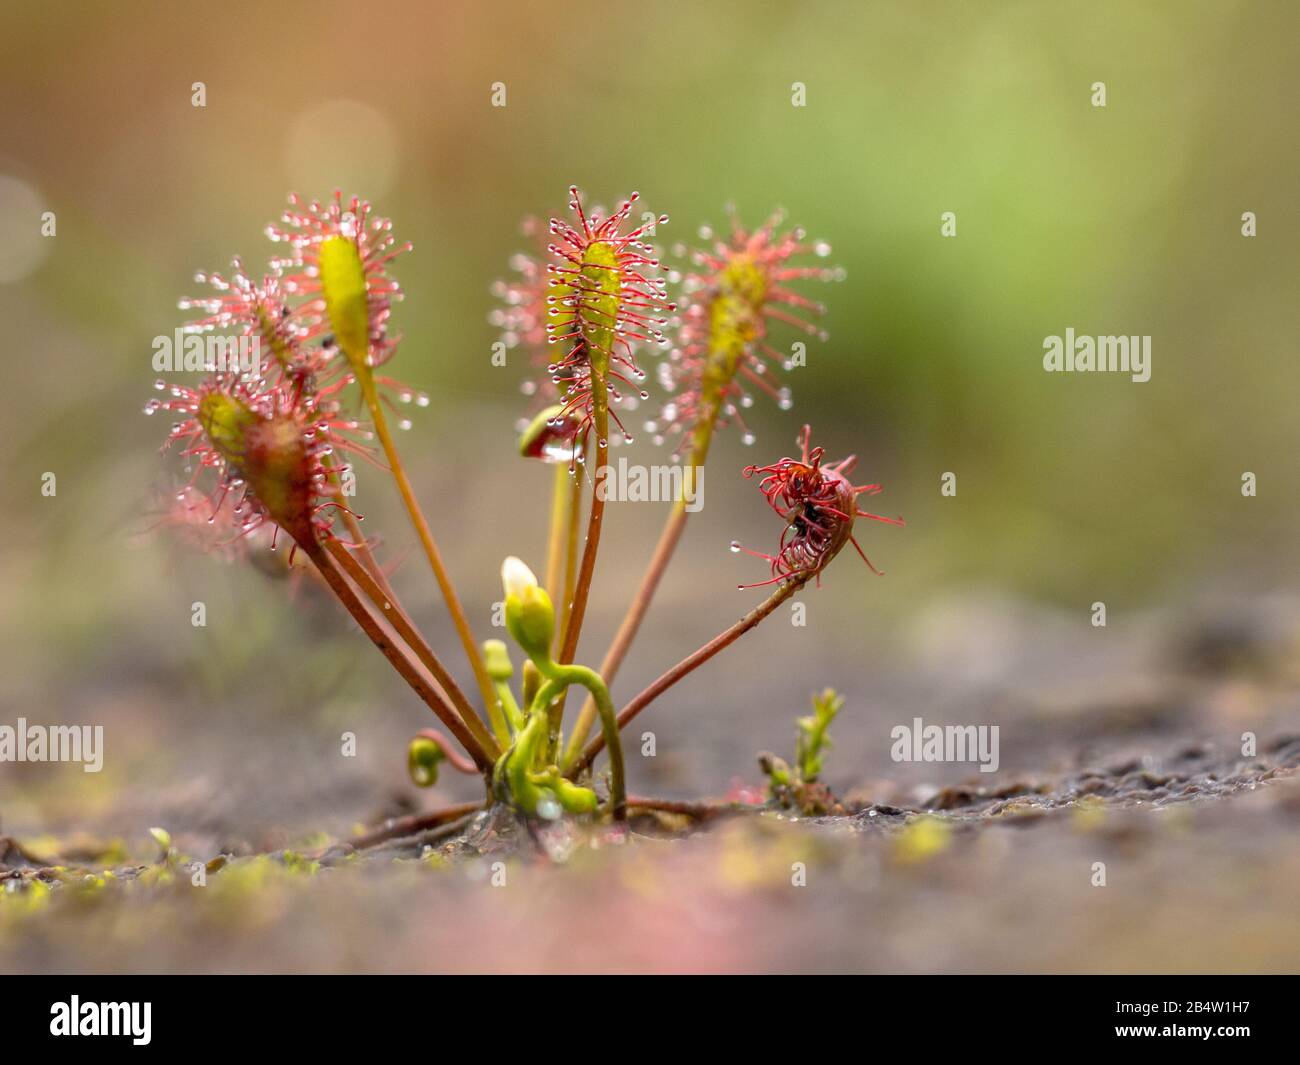 La Sundew di Spoonleaf (Drosera intermedia) è una specie di piante insettivore appartenente al genere Sundew. Con insetti catturati in foglie. Foto Stock